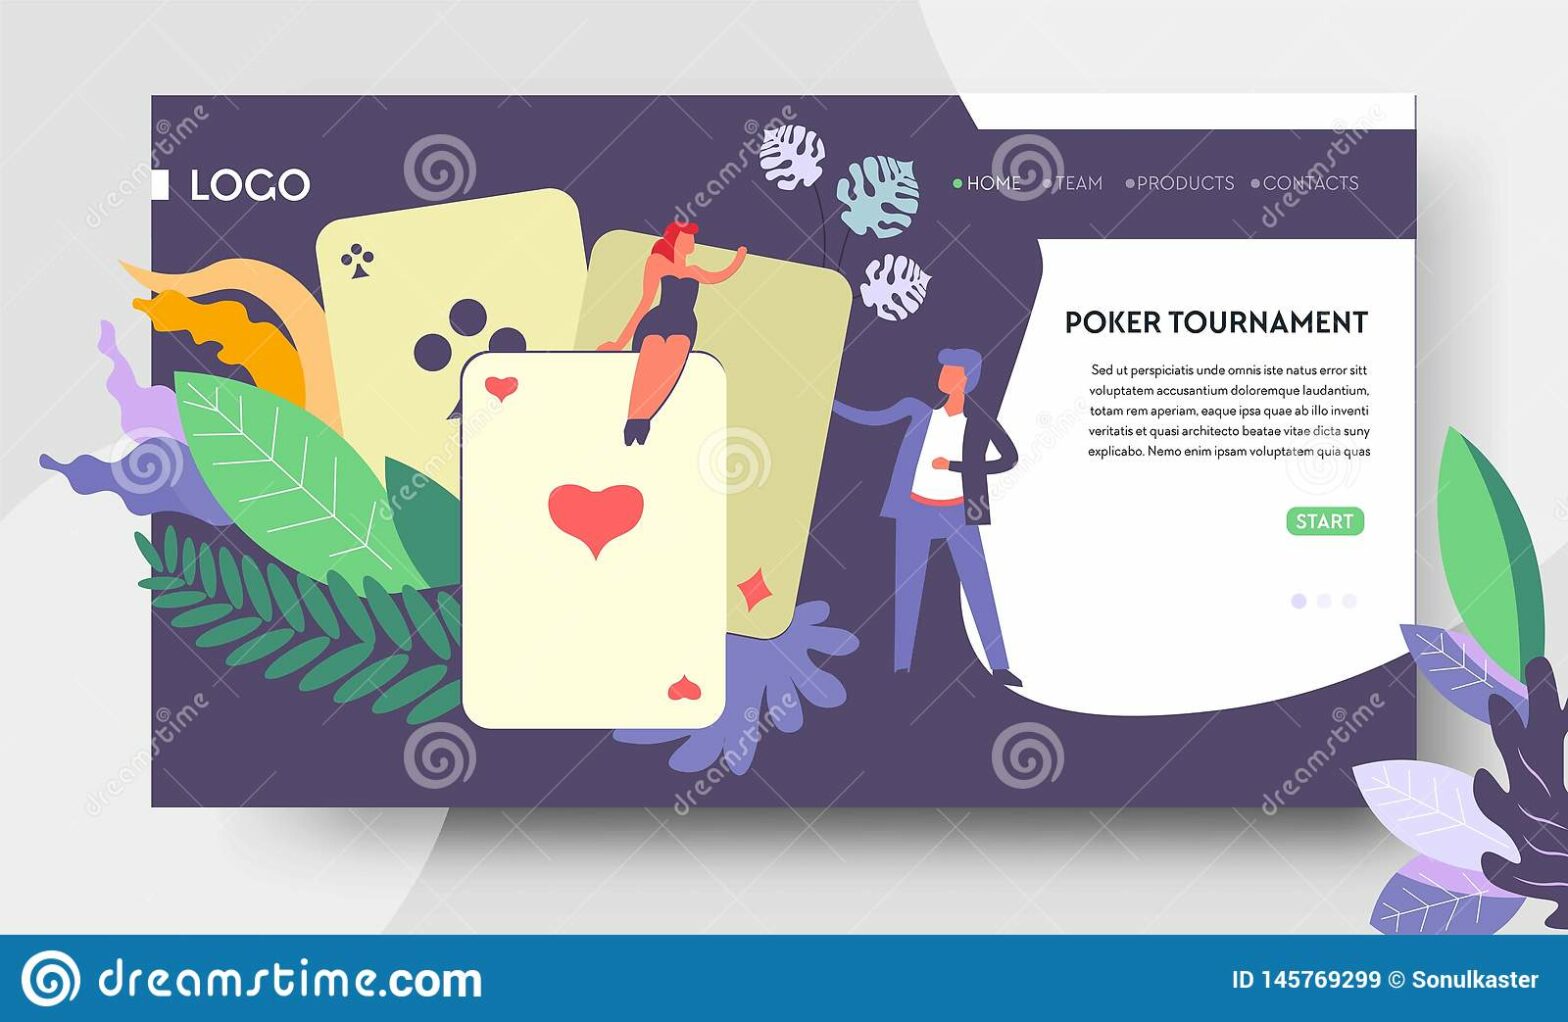 Tournament Poker - Fortune or Fortune